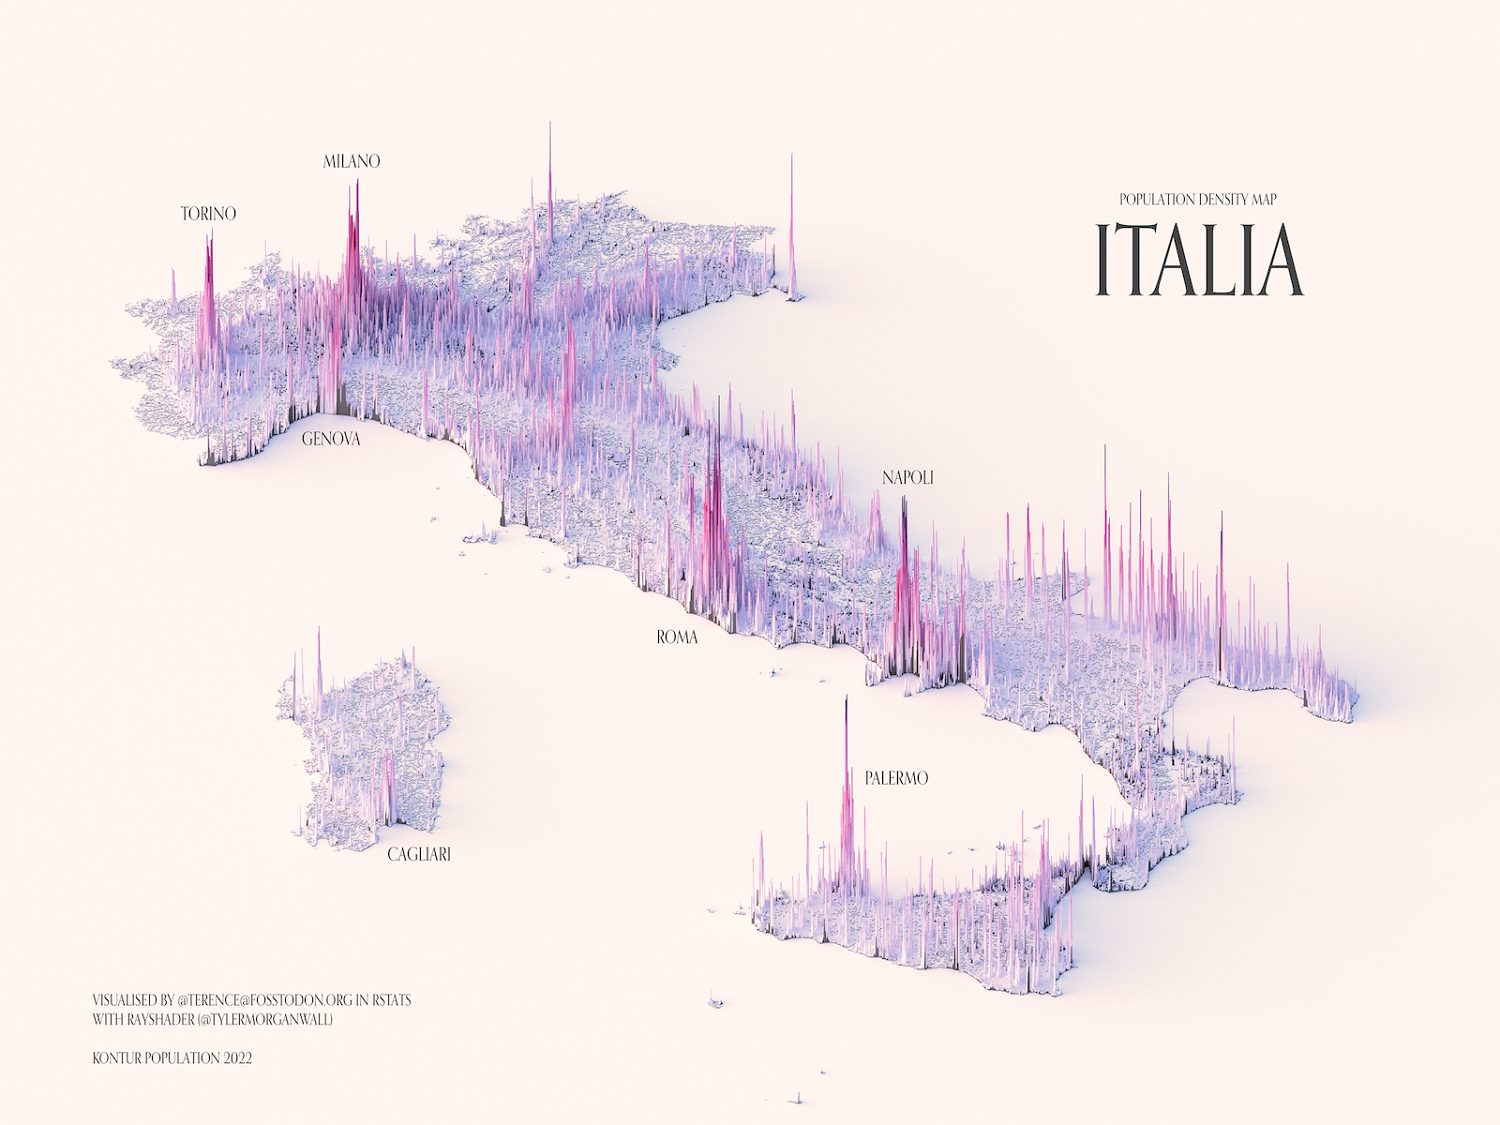 Visualizzazione dei modelli di densità della popolazione in Italia